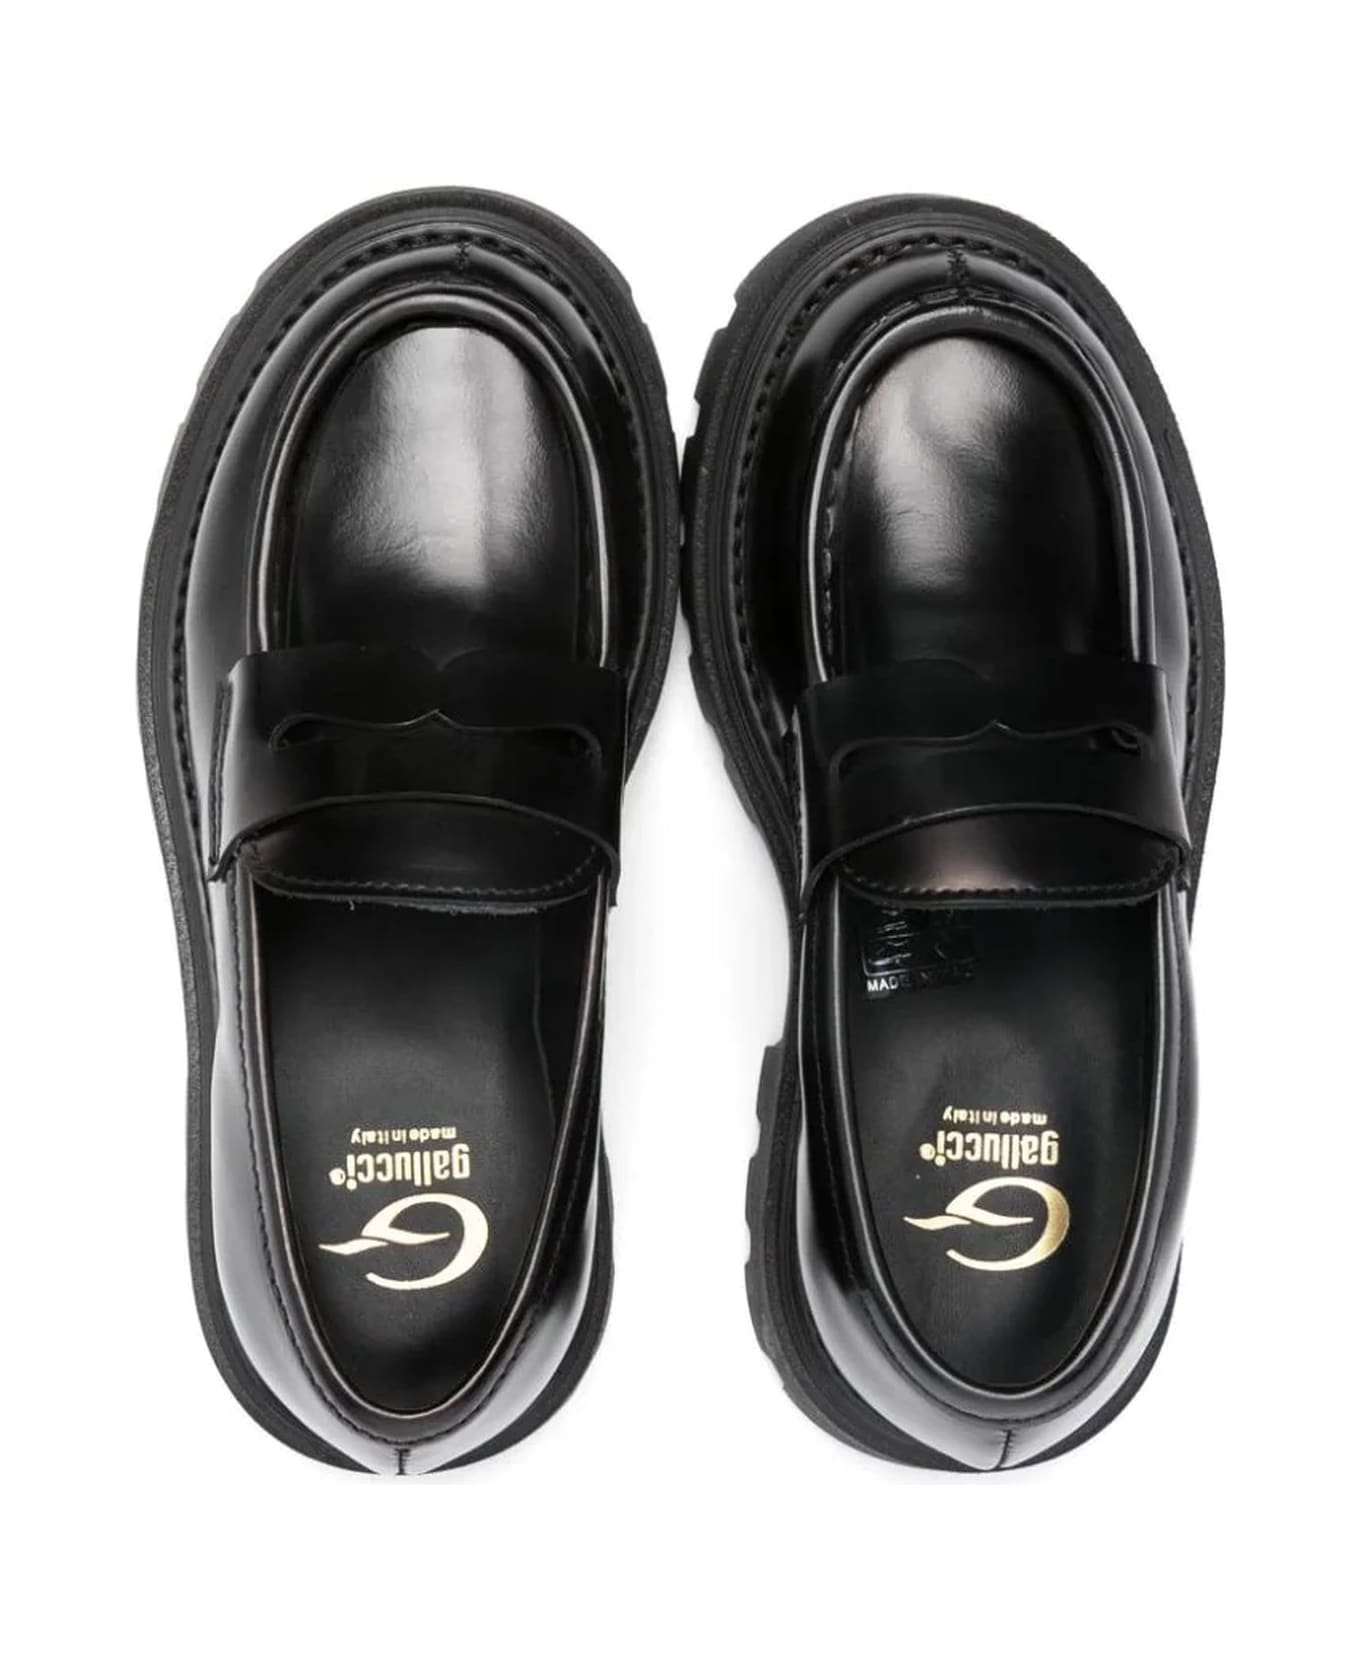 Gallucci Flat Shoes Black - Black シューズ